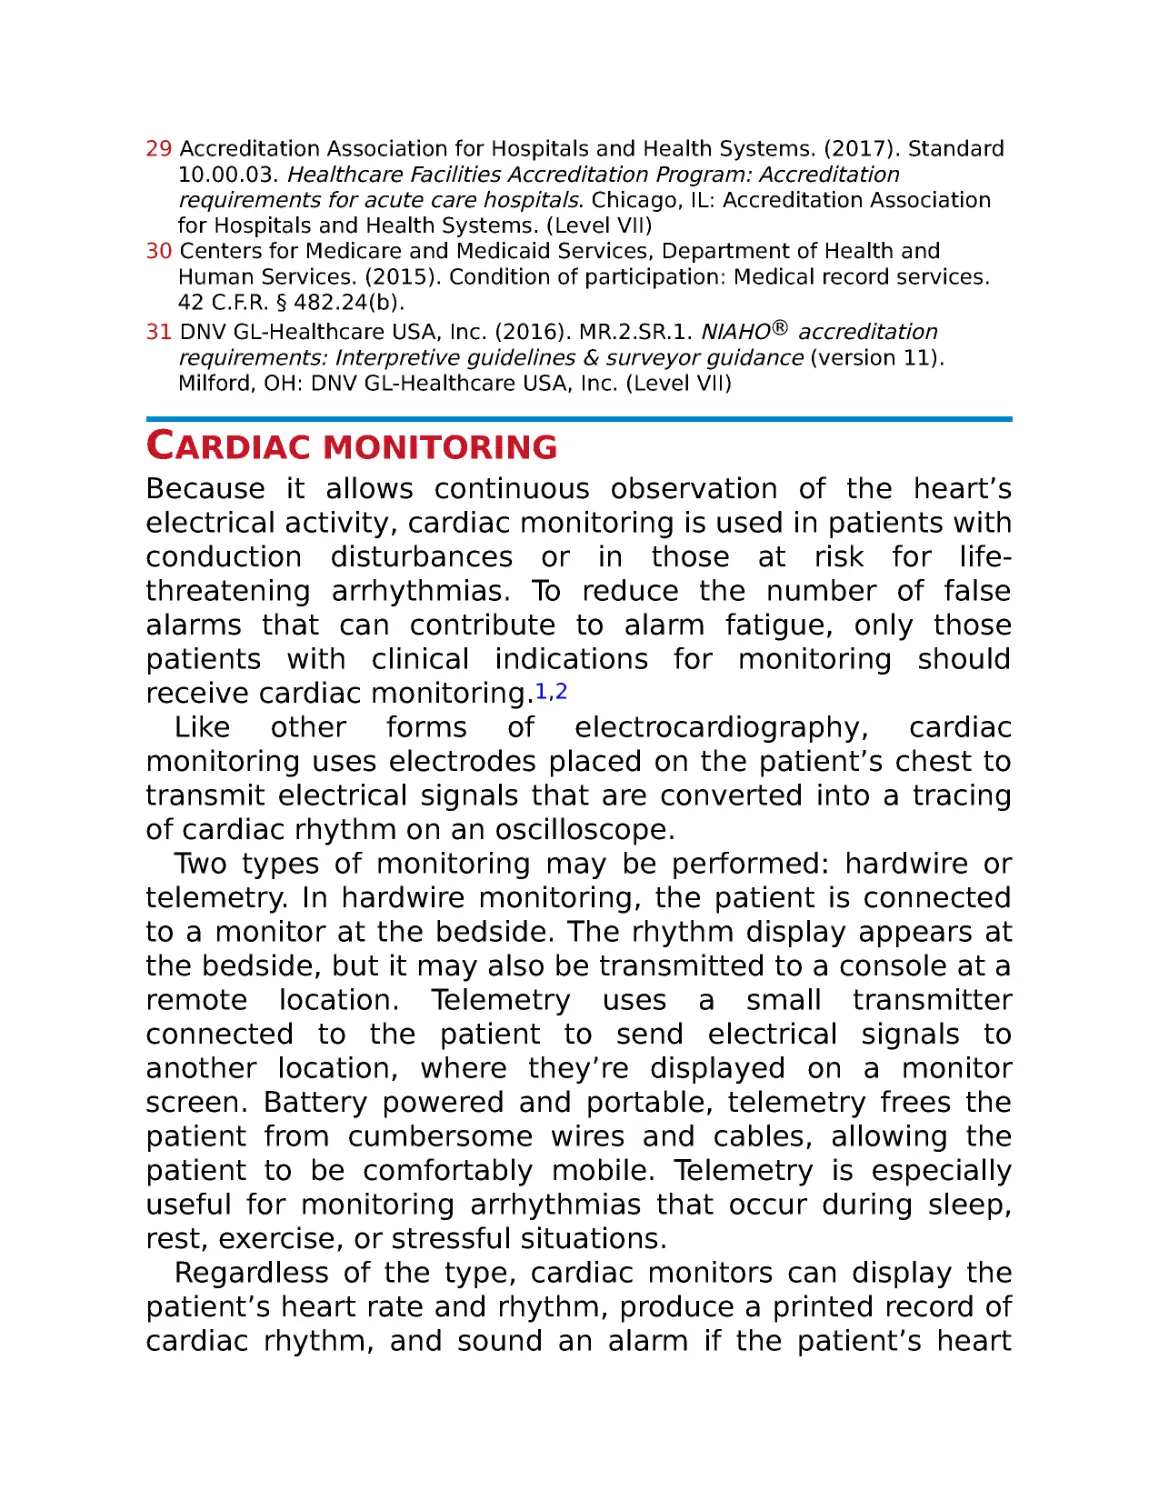 Cardiac monitoring